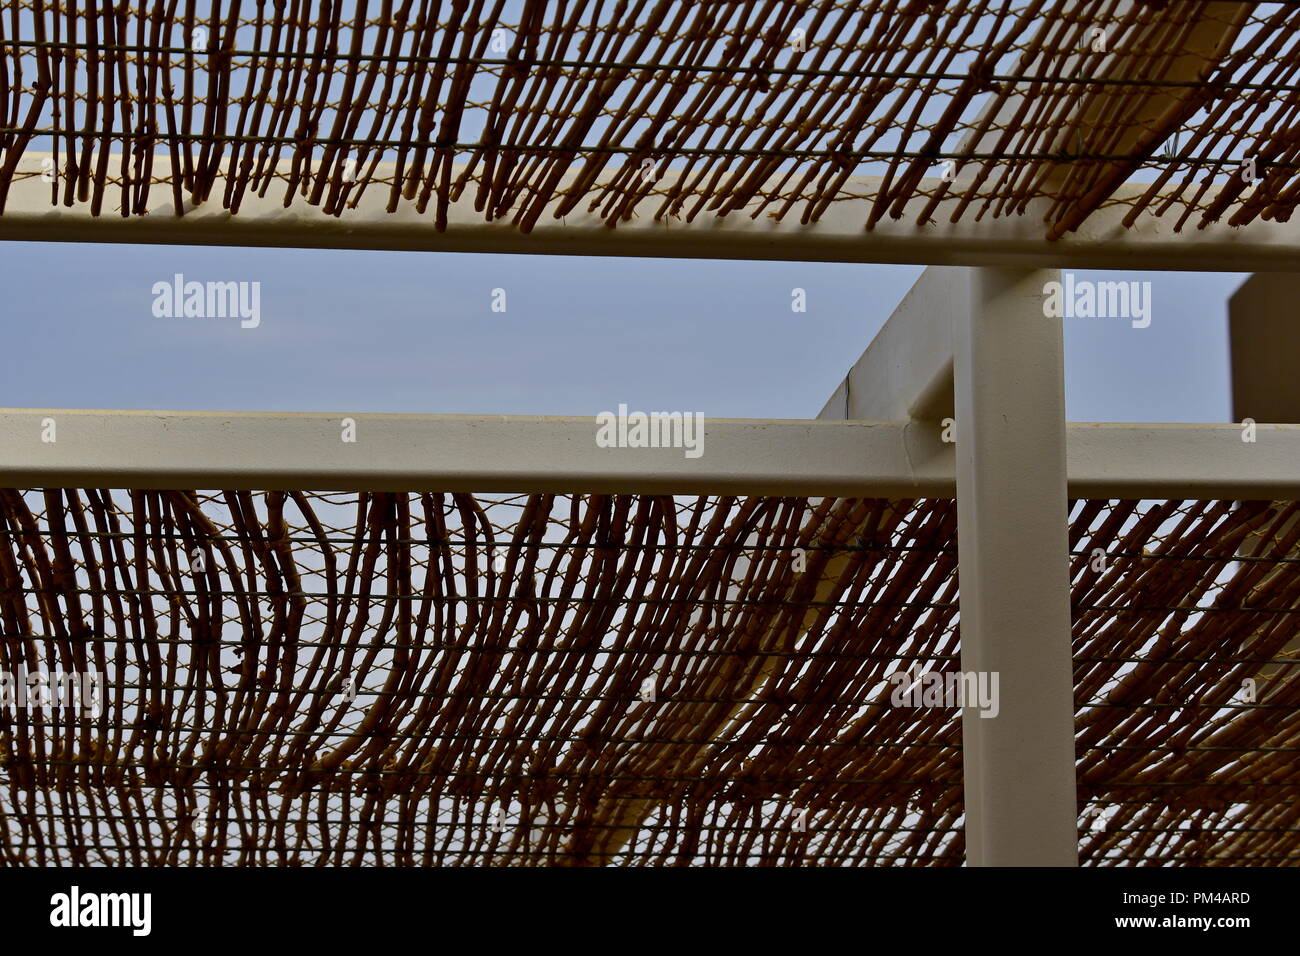 L'ombrage de bambou sur châssis métallique Banque D'Images